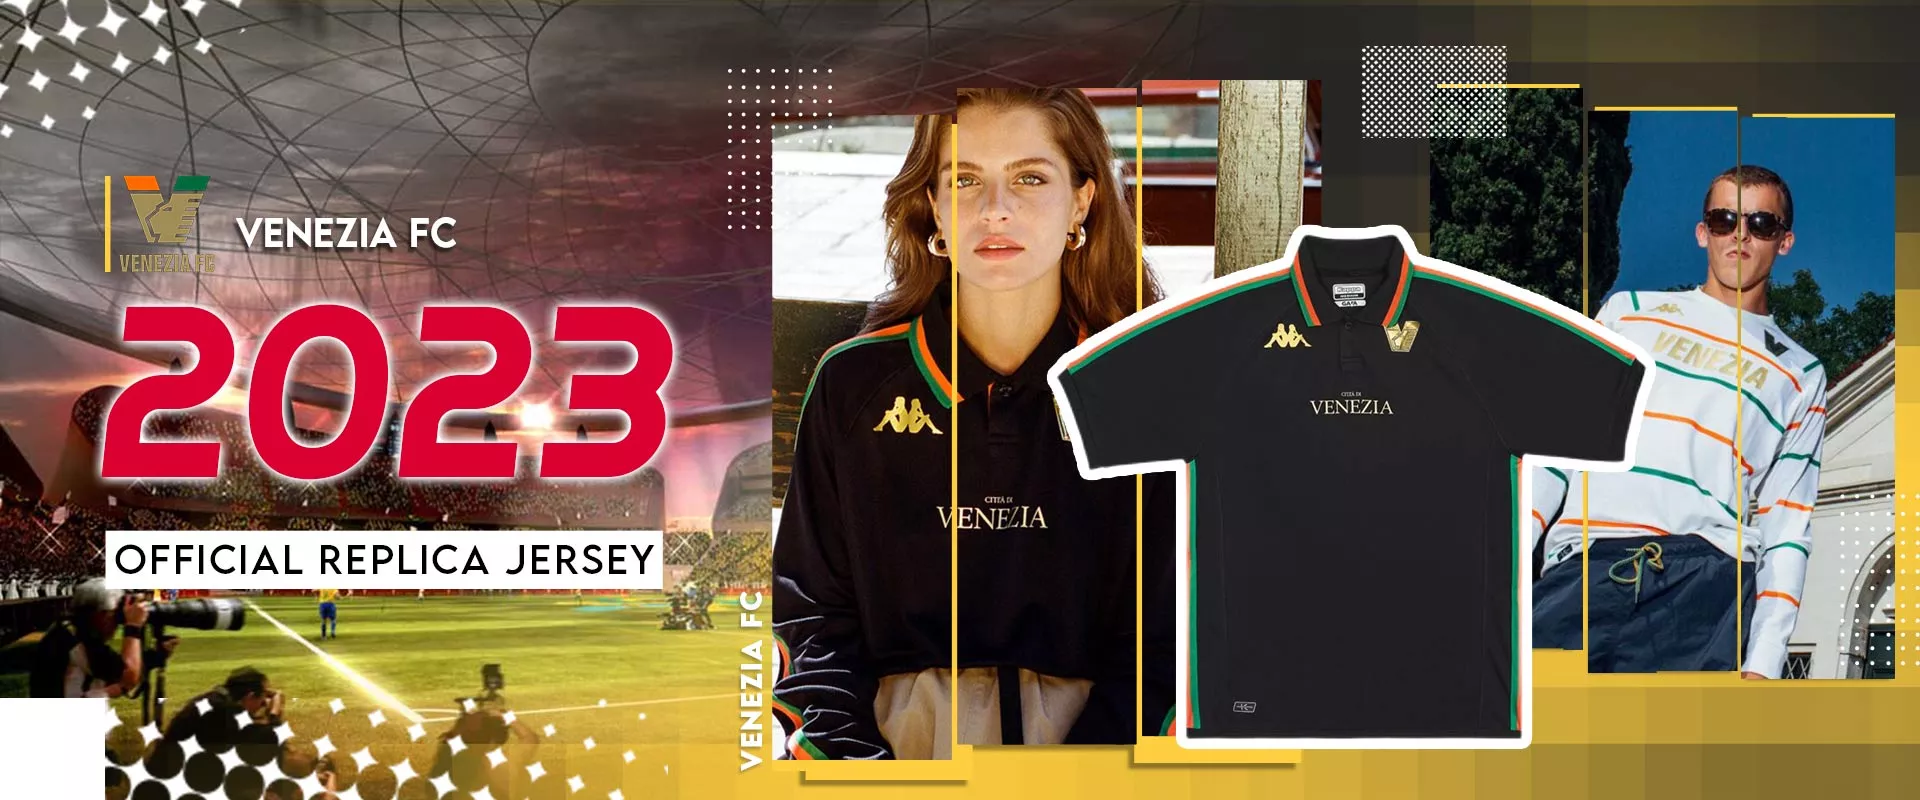 Venezia FC Jersey, Venezia FC Jersey, Kits, Shirts